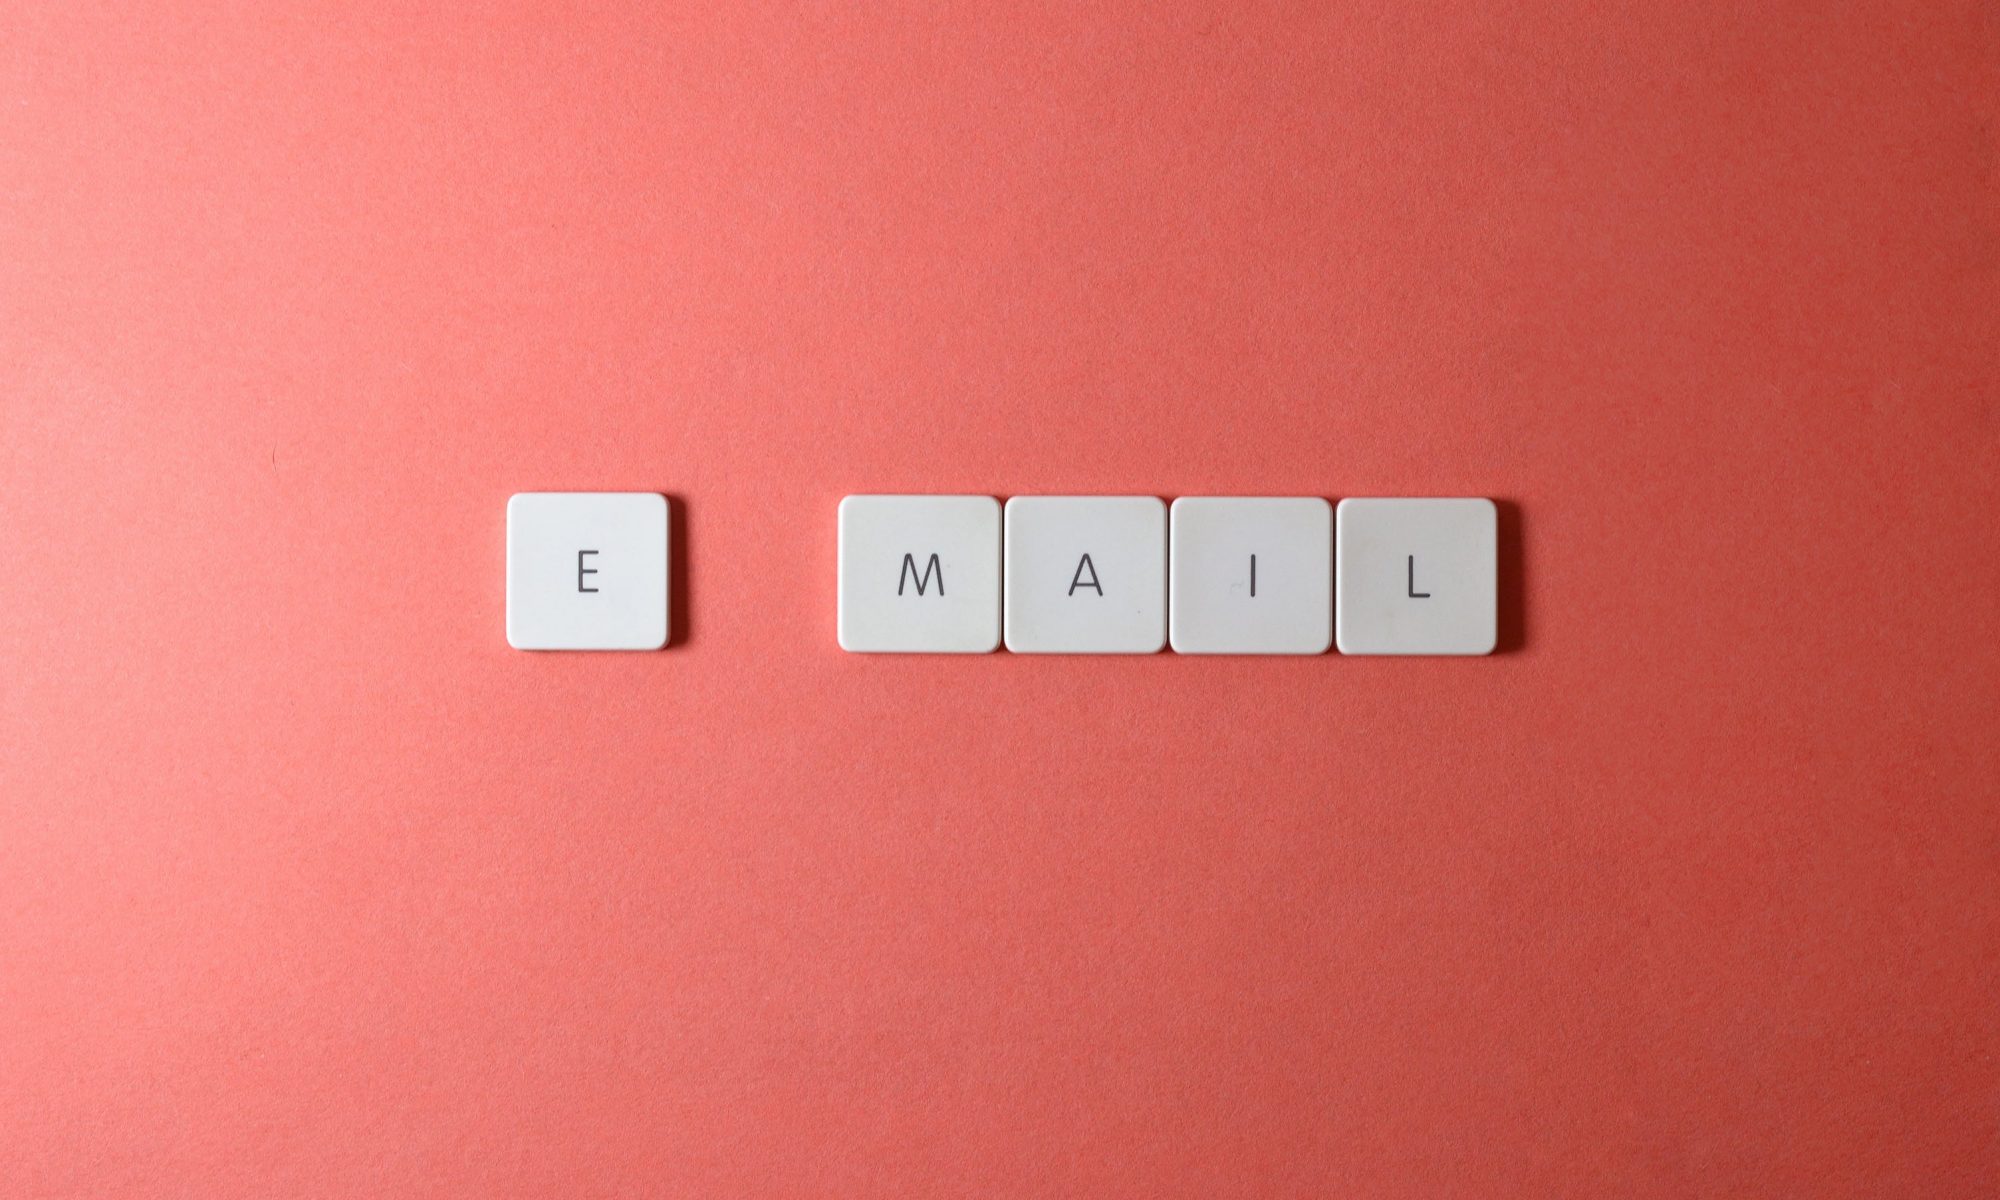 Spielsteine mit Buchstaben ergeben das Wort EMAIL.